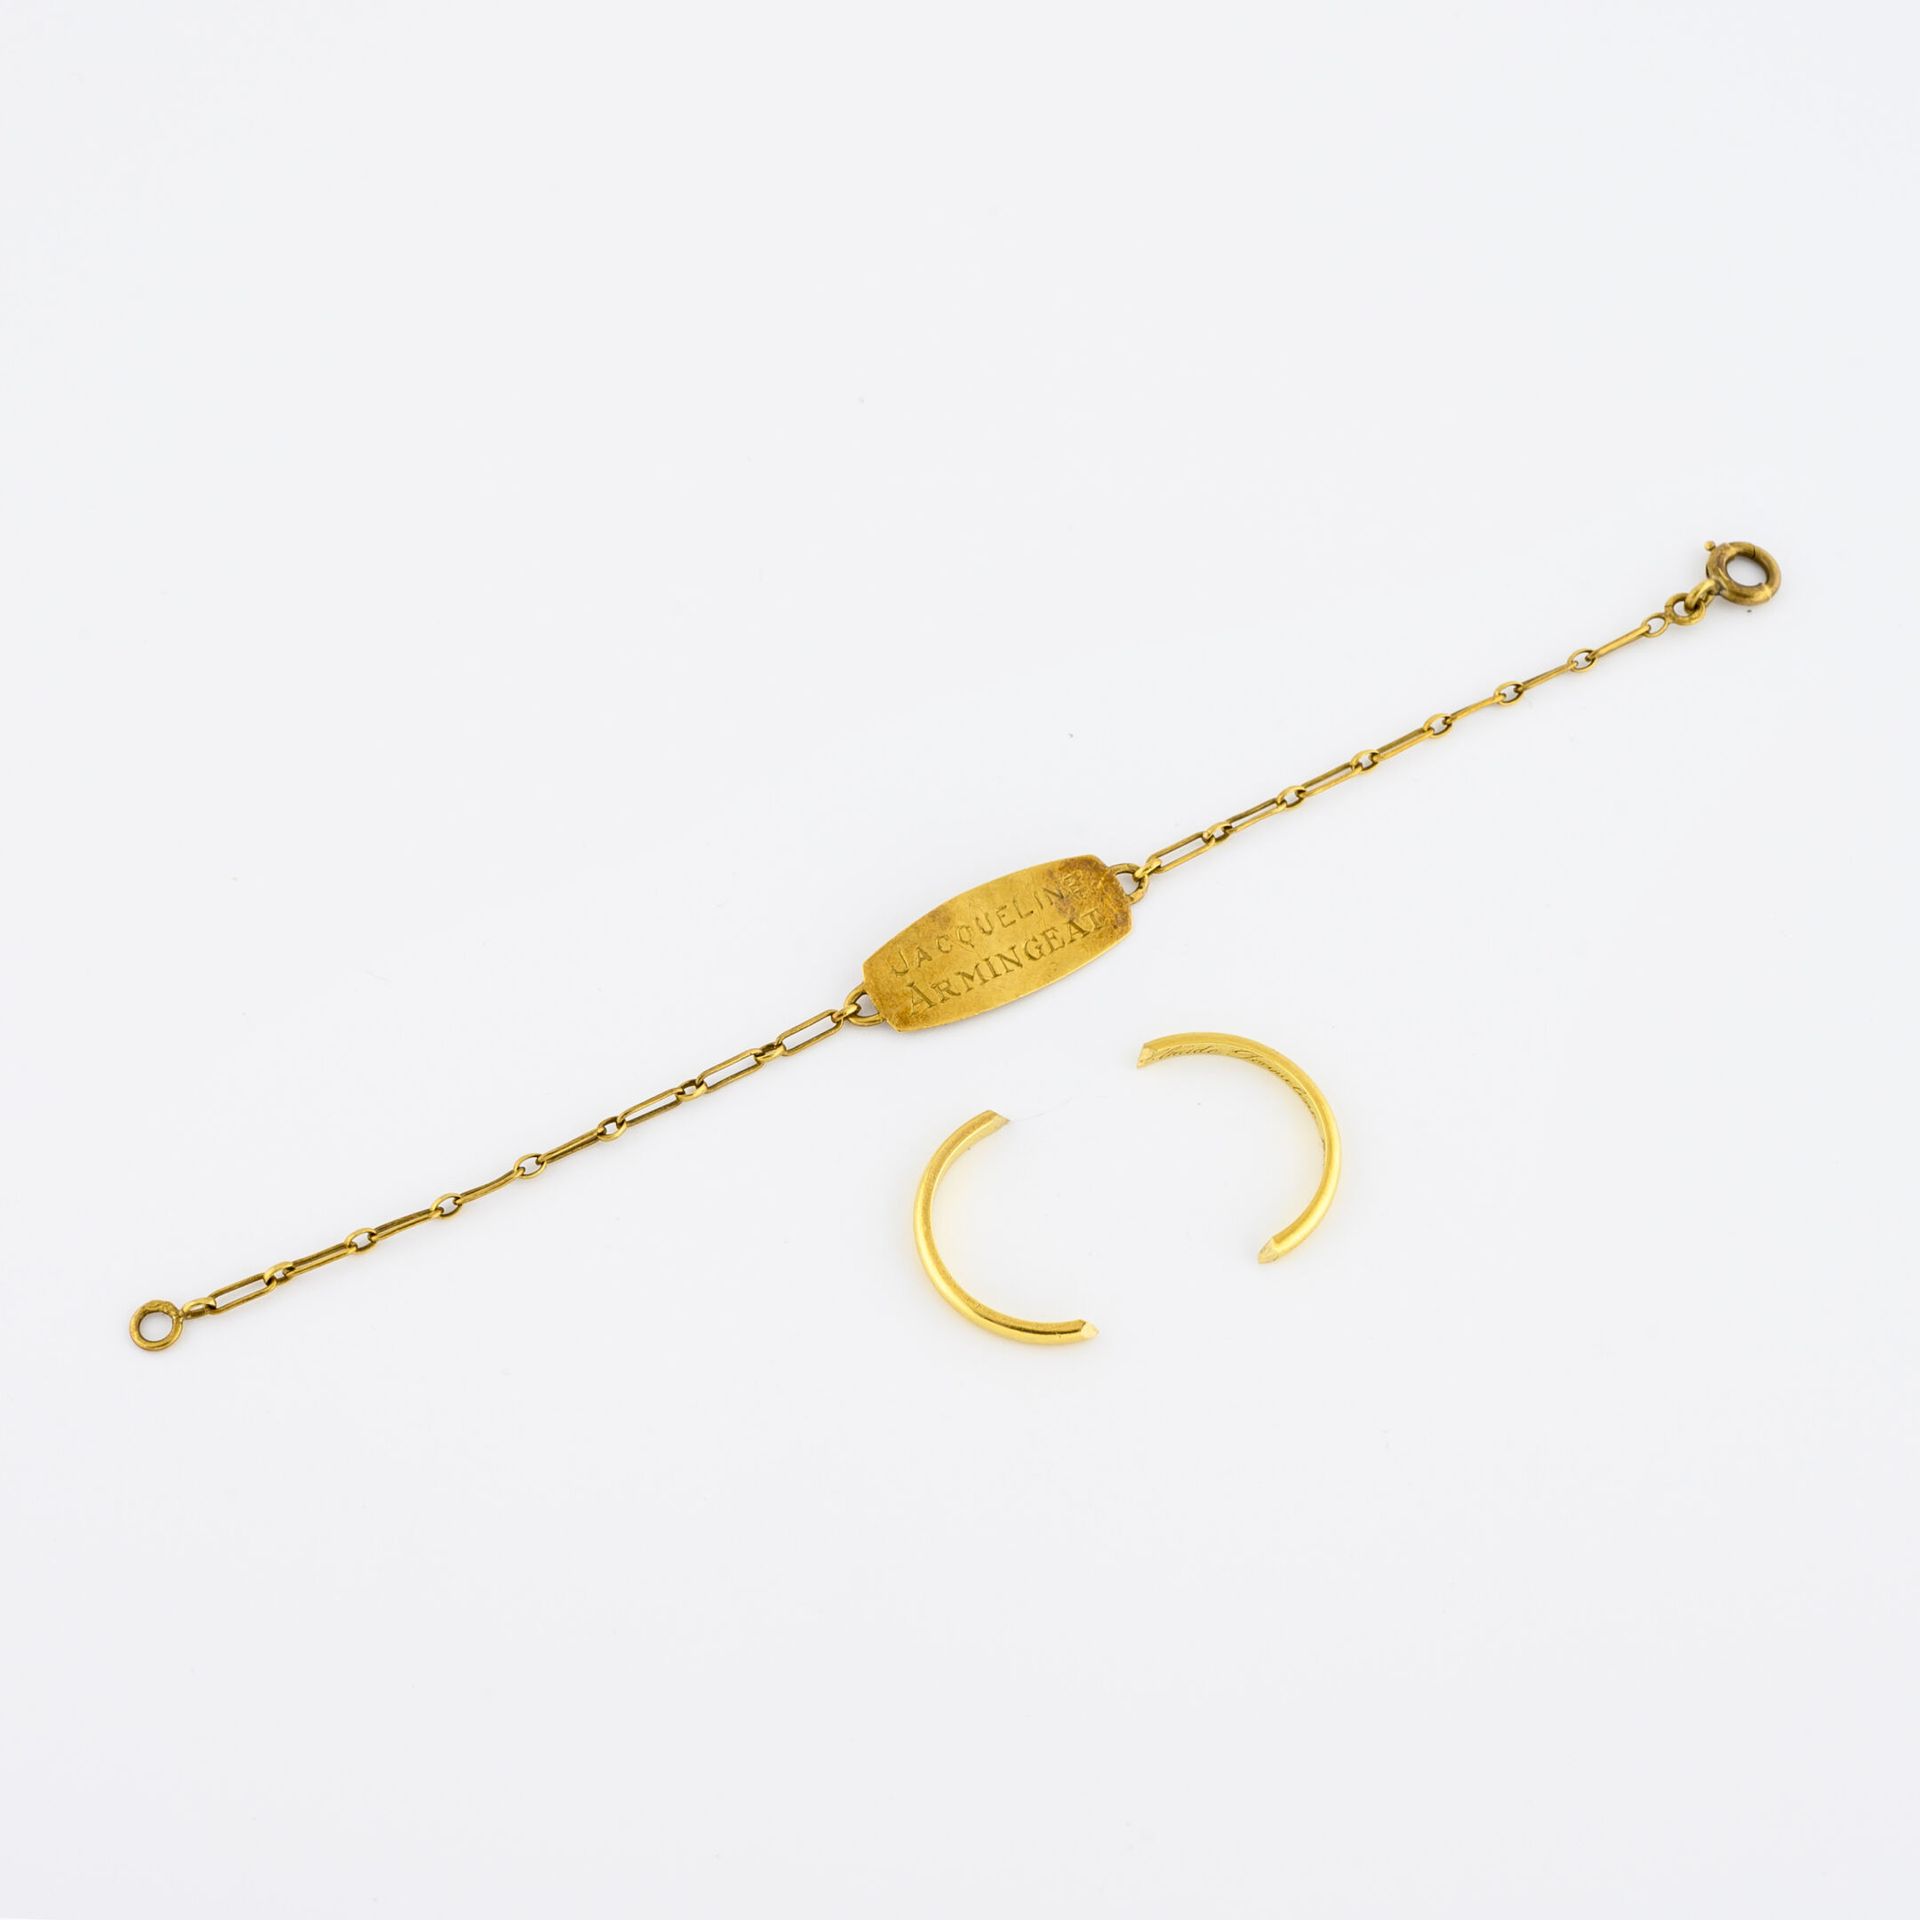 Null Bruchstück eines Eherings aus Gelbgold (750).

Gewicht: 1,7 g. 

ANGESCHLOS&hellip;